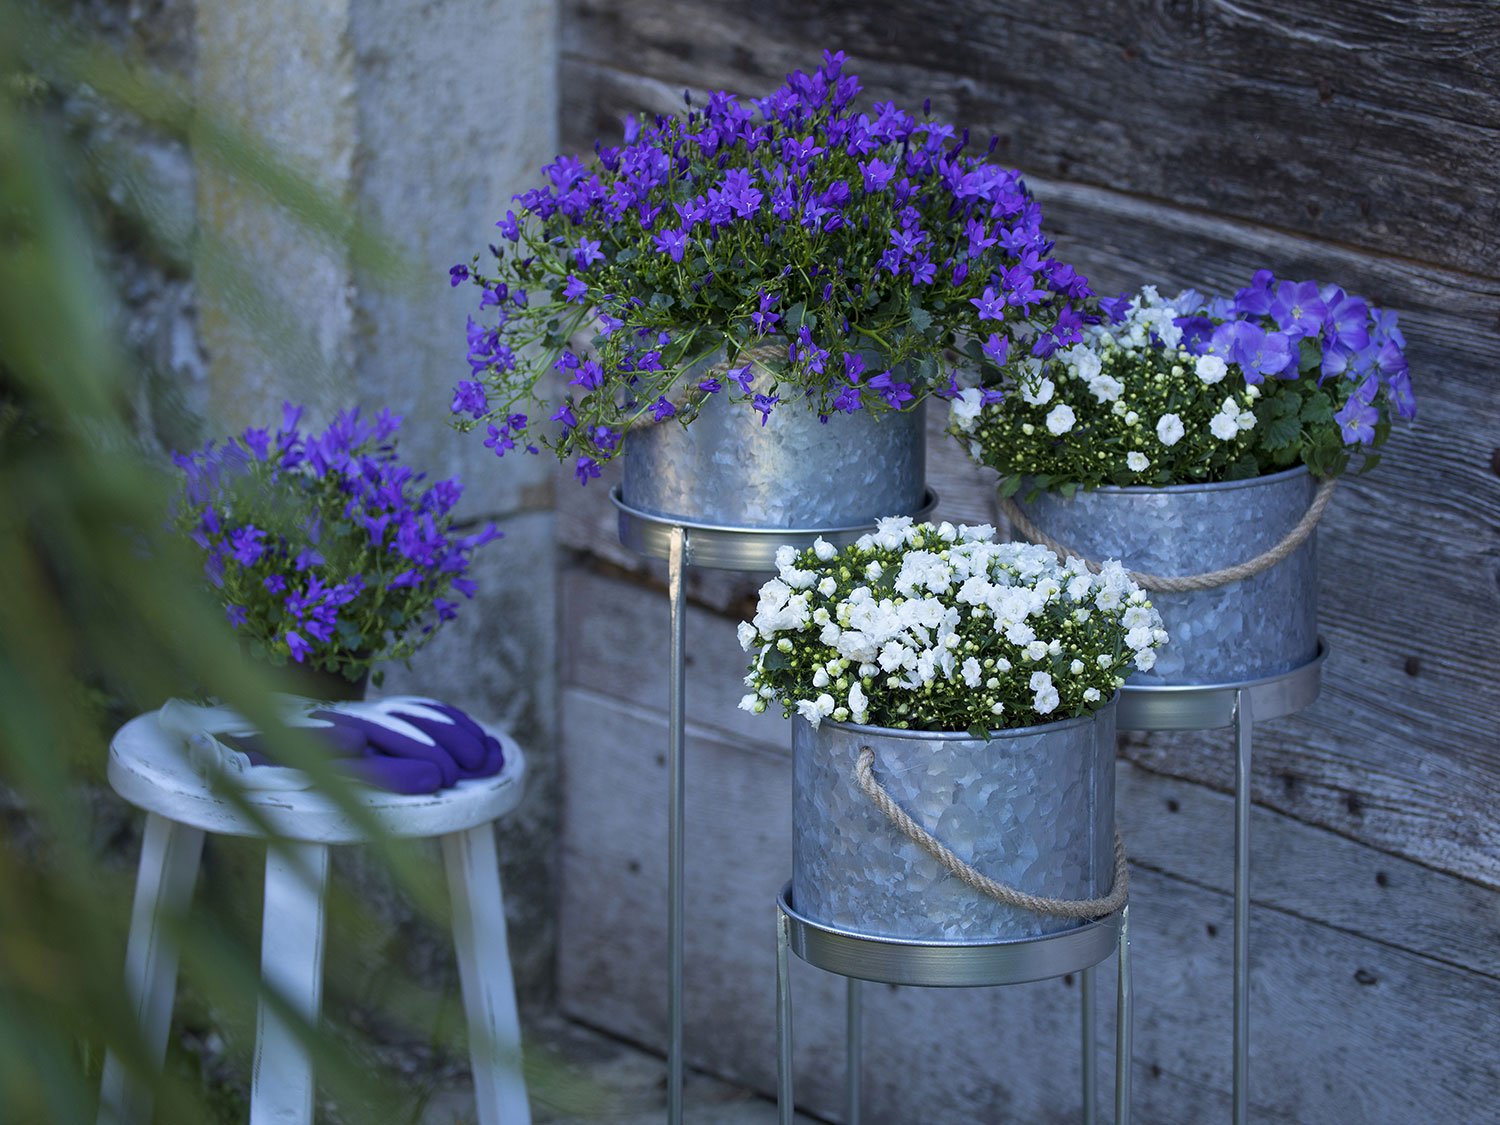 Des campanules violet et blanc dans des pots en métal